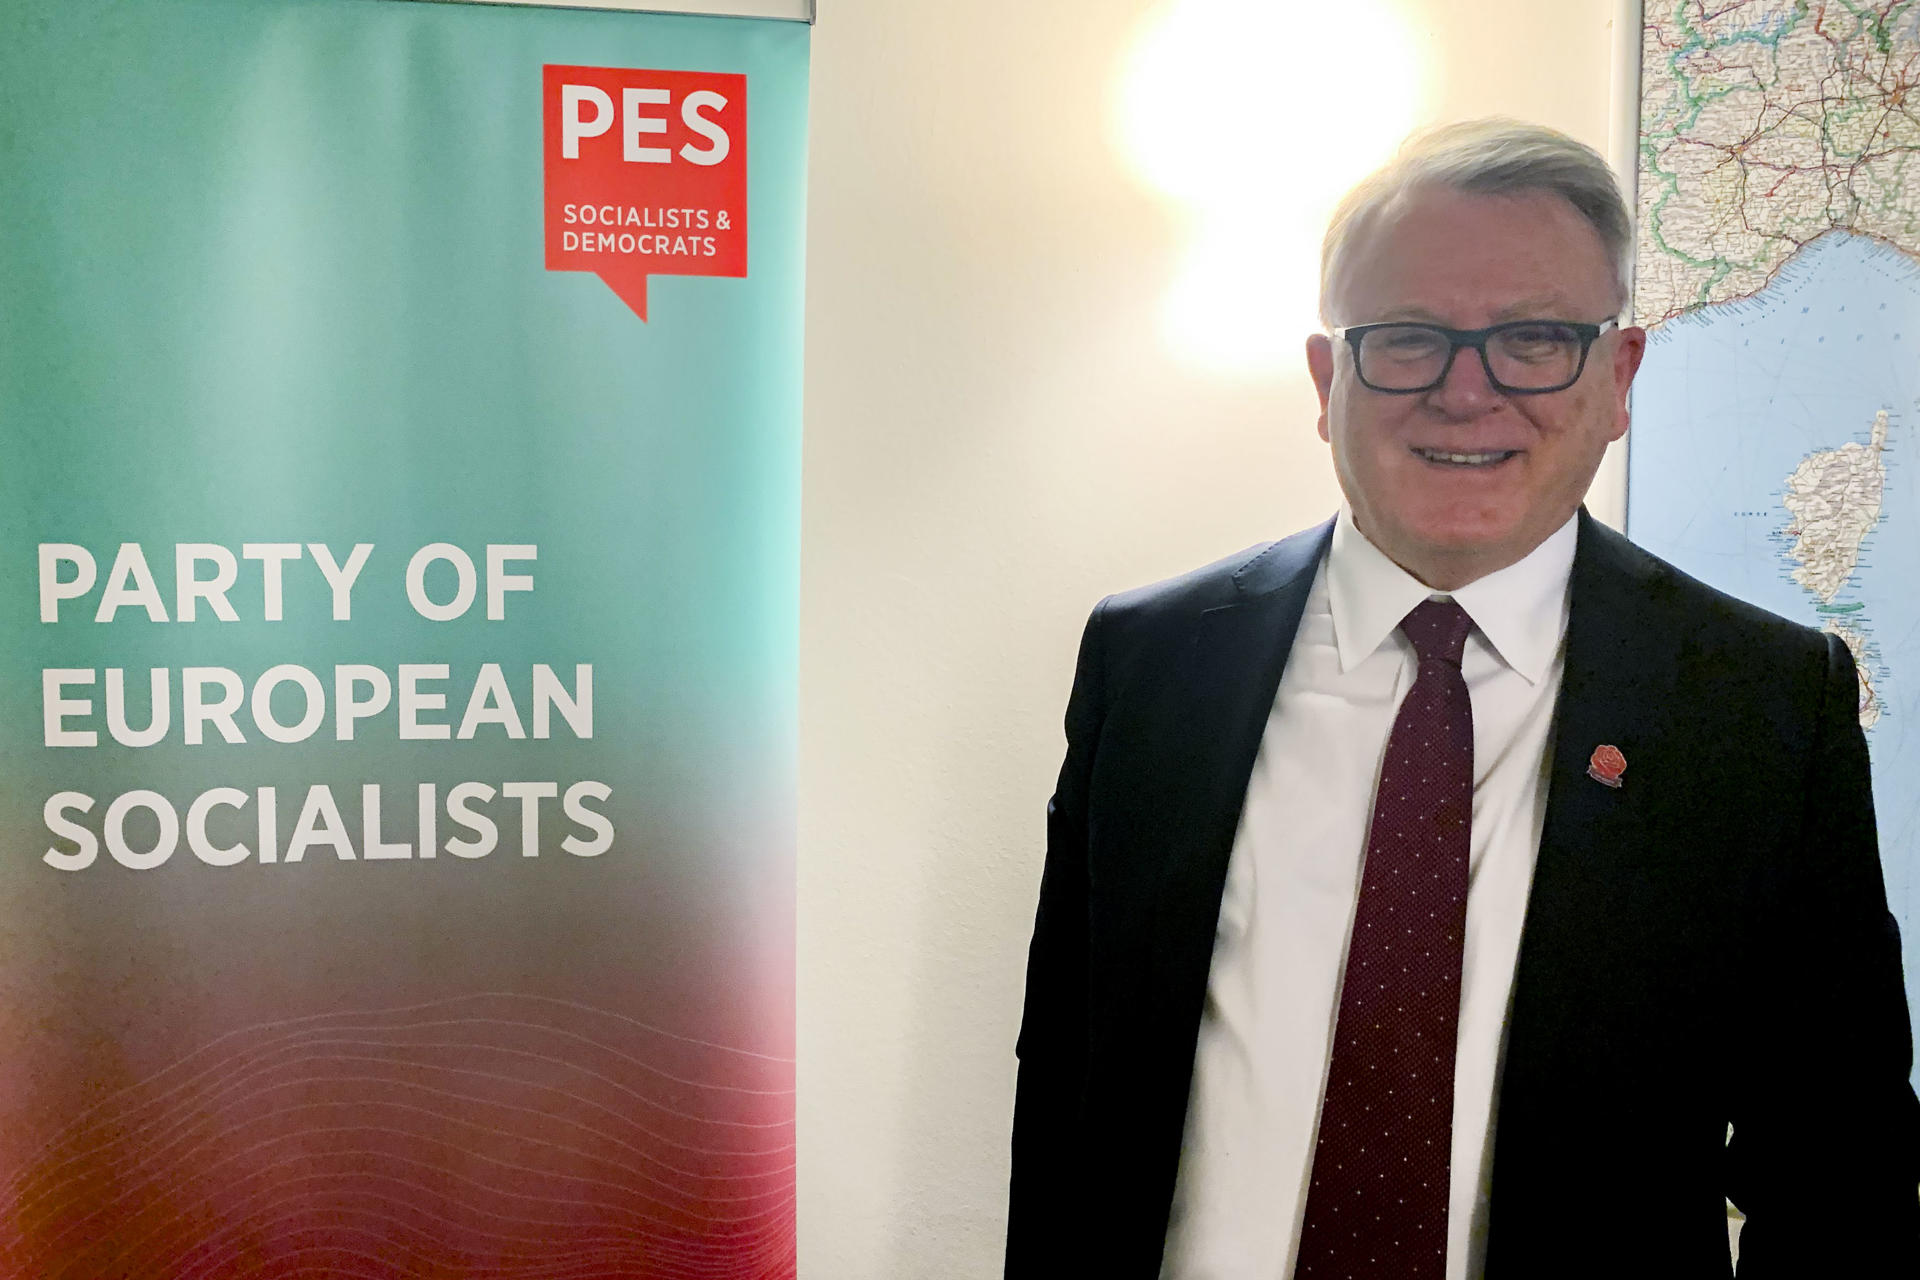 El cabeza de lista de los socialdemócratas para las elecciones europeas, Nicolas Schmit,socialistas.EFE/ Miguel Salvatierra